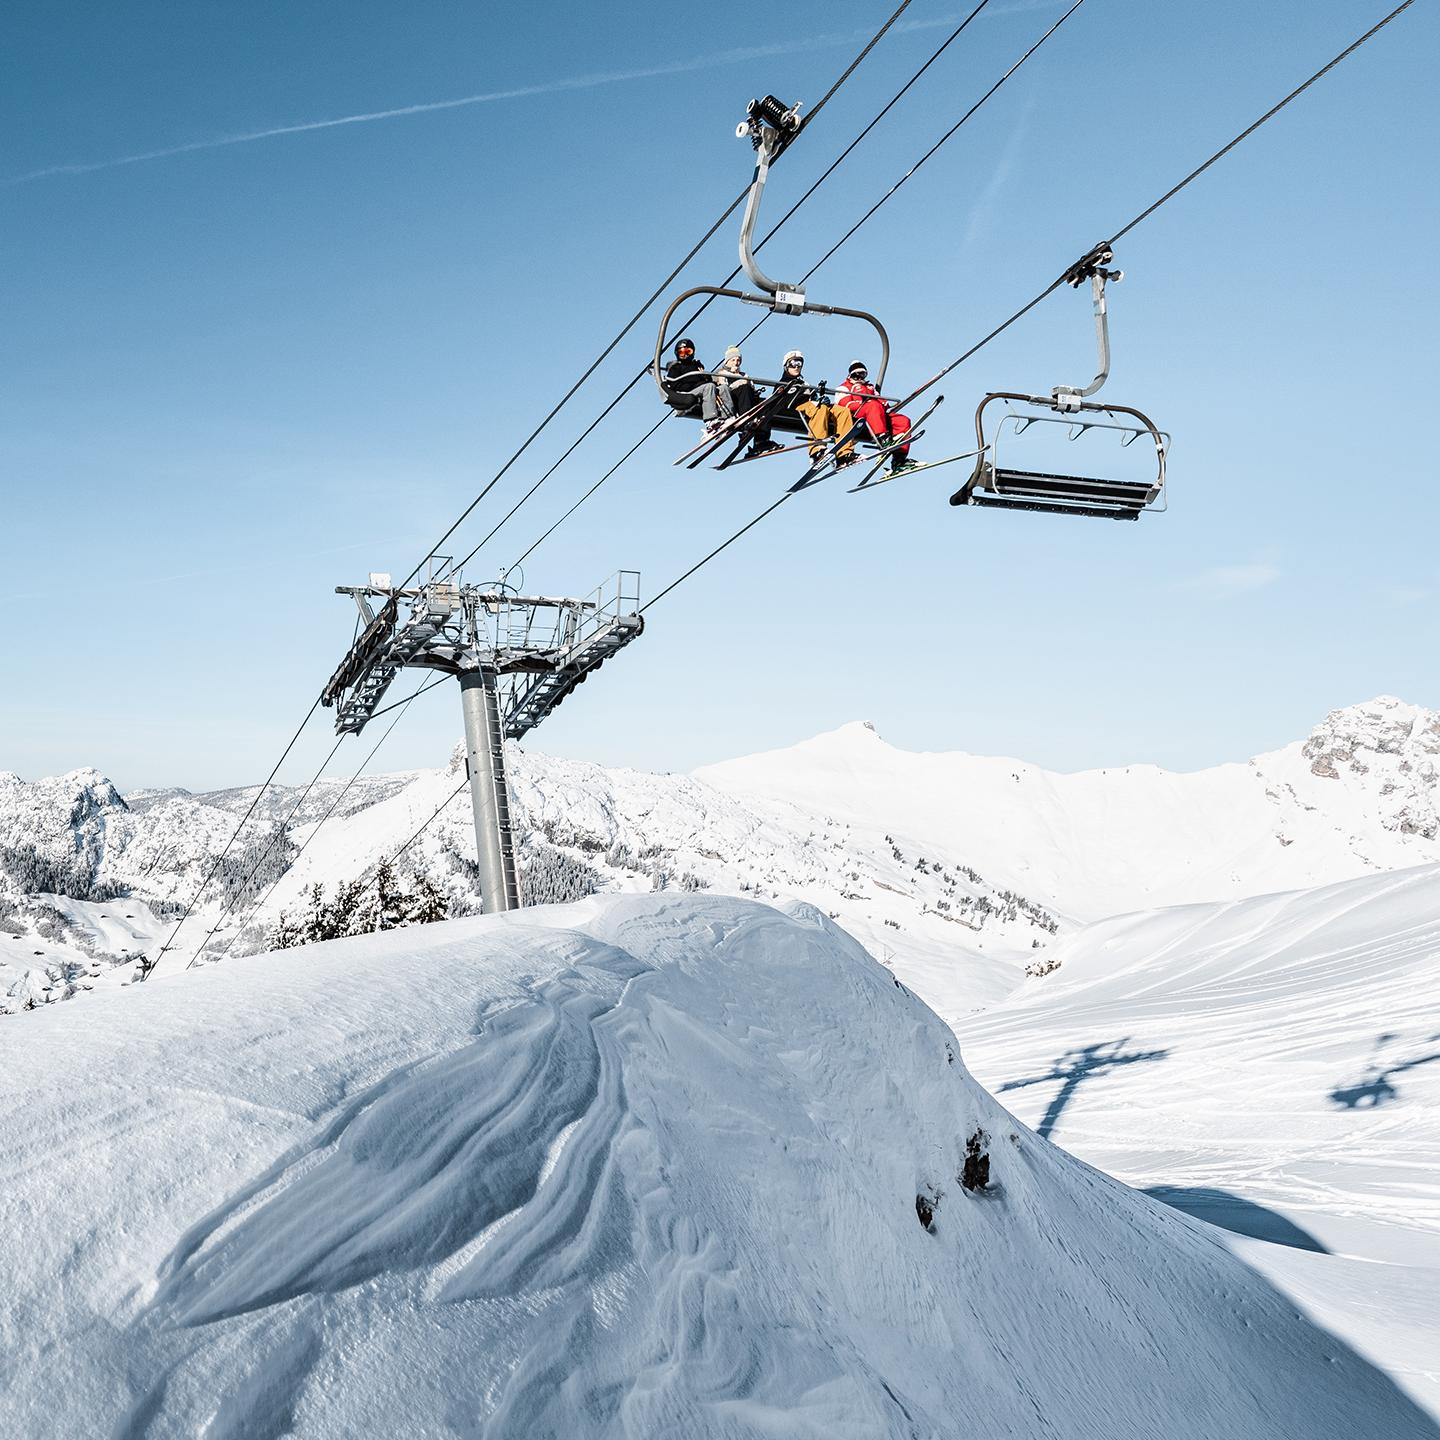 Domaine skiable du Grand-Bornand en Haute-Savoie, au cœur du Massif des Aravis